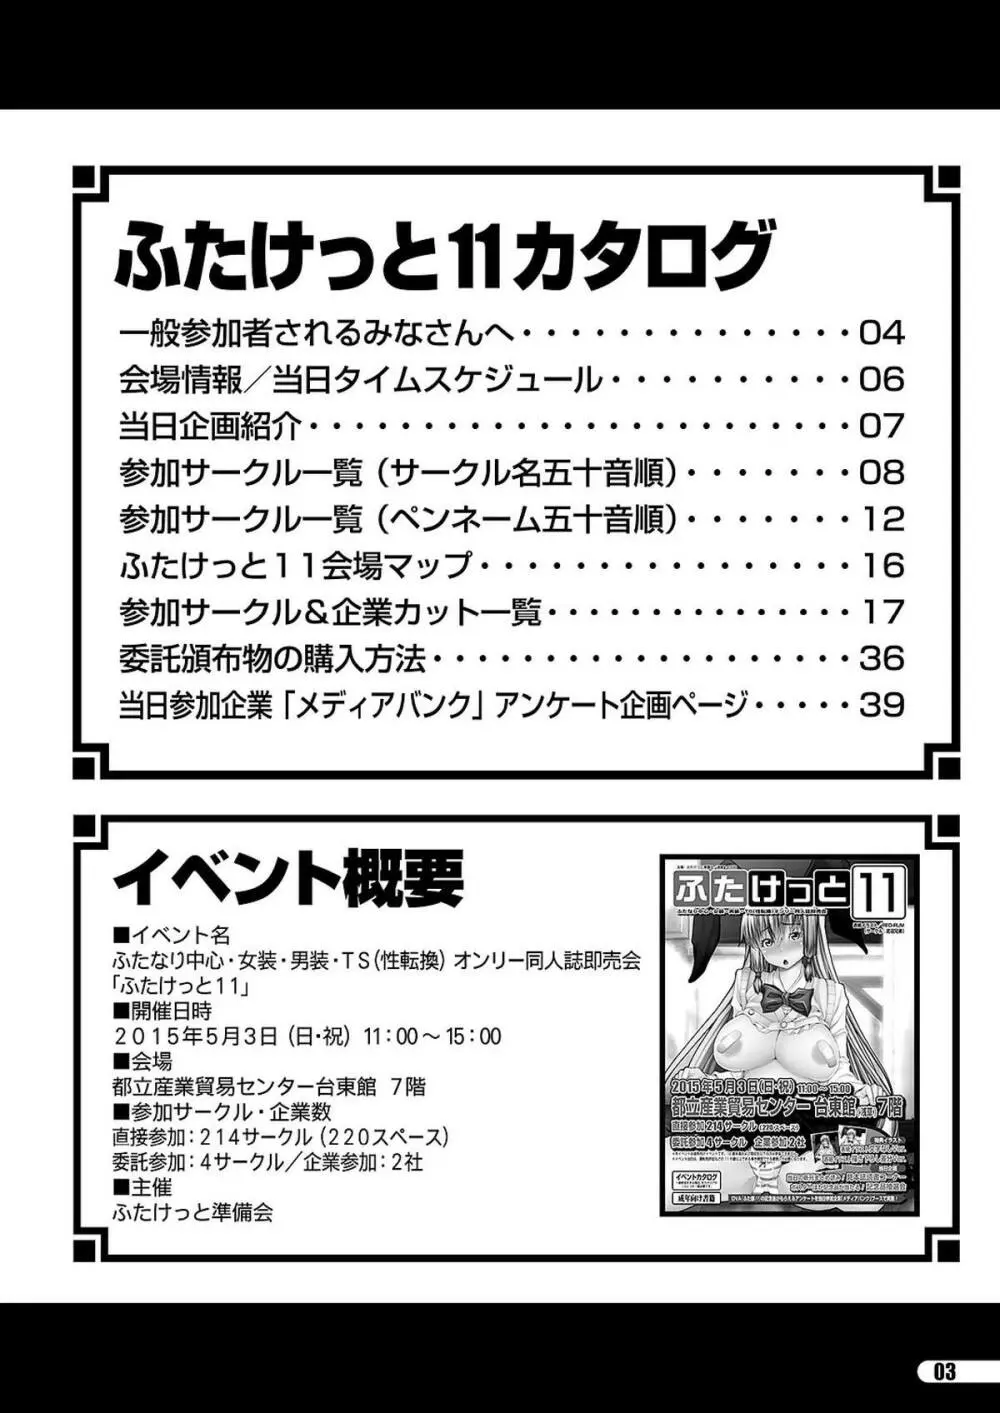 「ふたけっと11」PDF版カタログ 3ページ